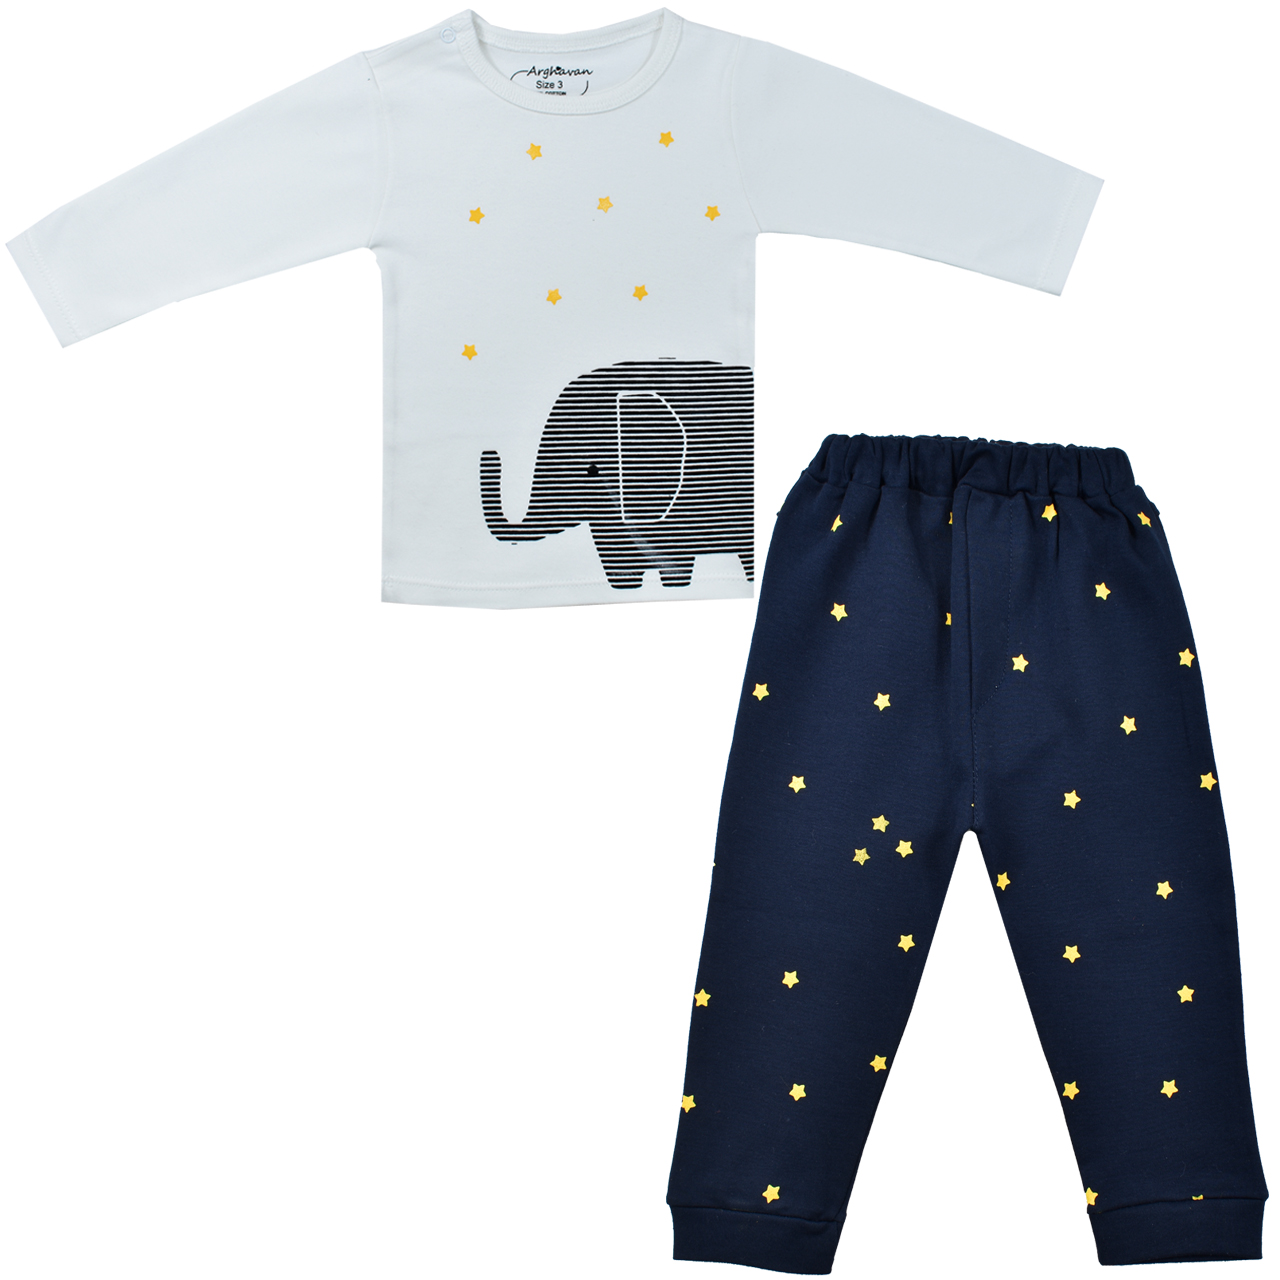 ست تی شرت و شلوار نوزادی مدل ارغوان فیل و ستاره